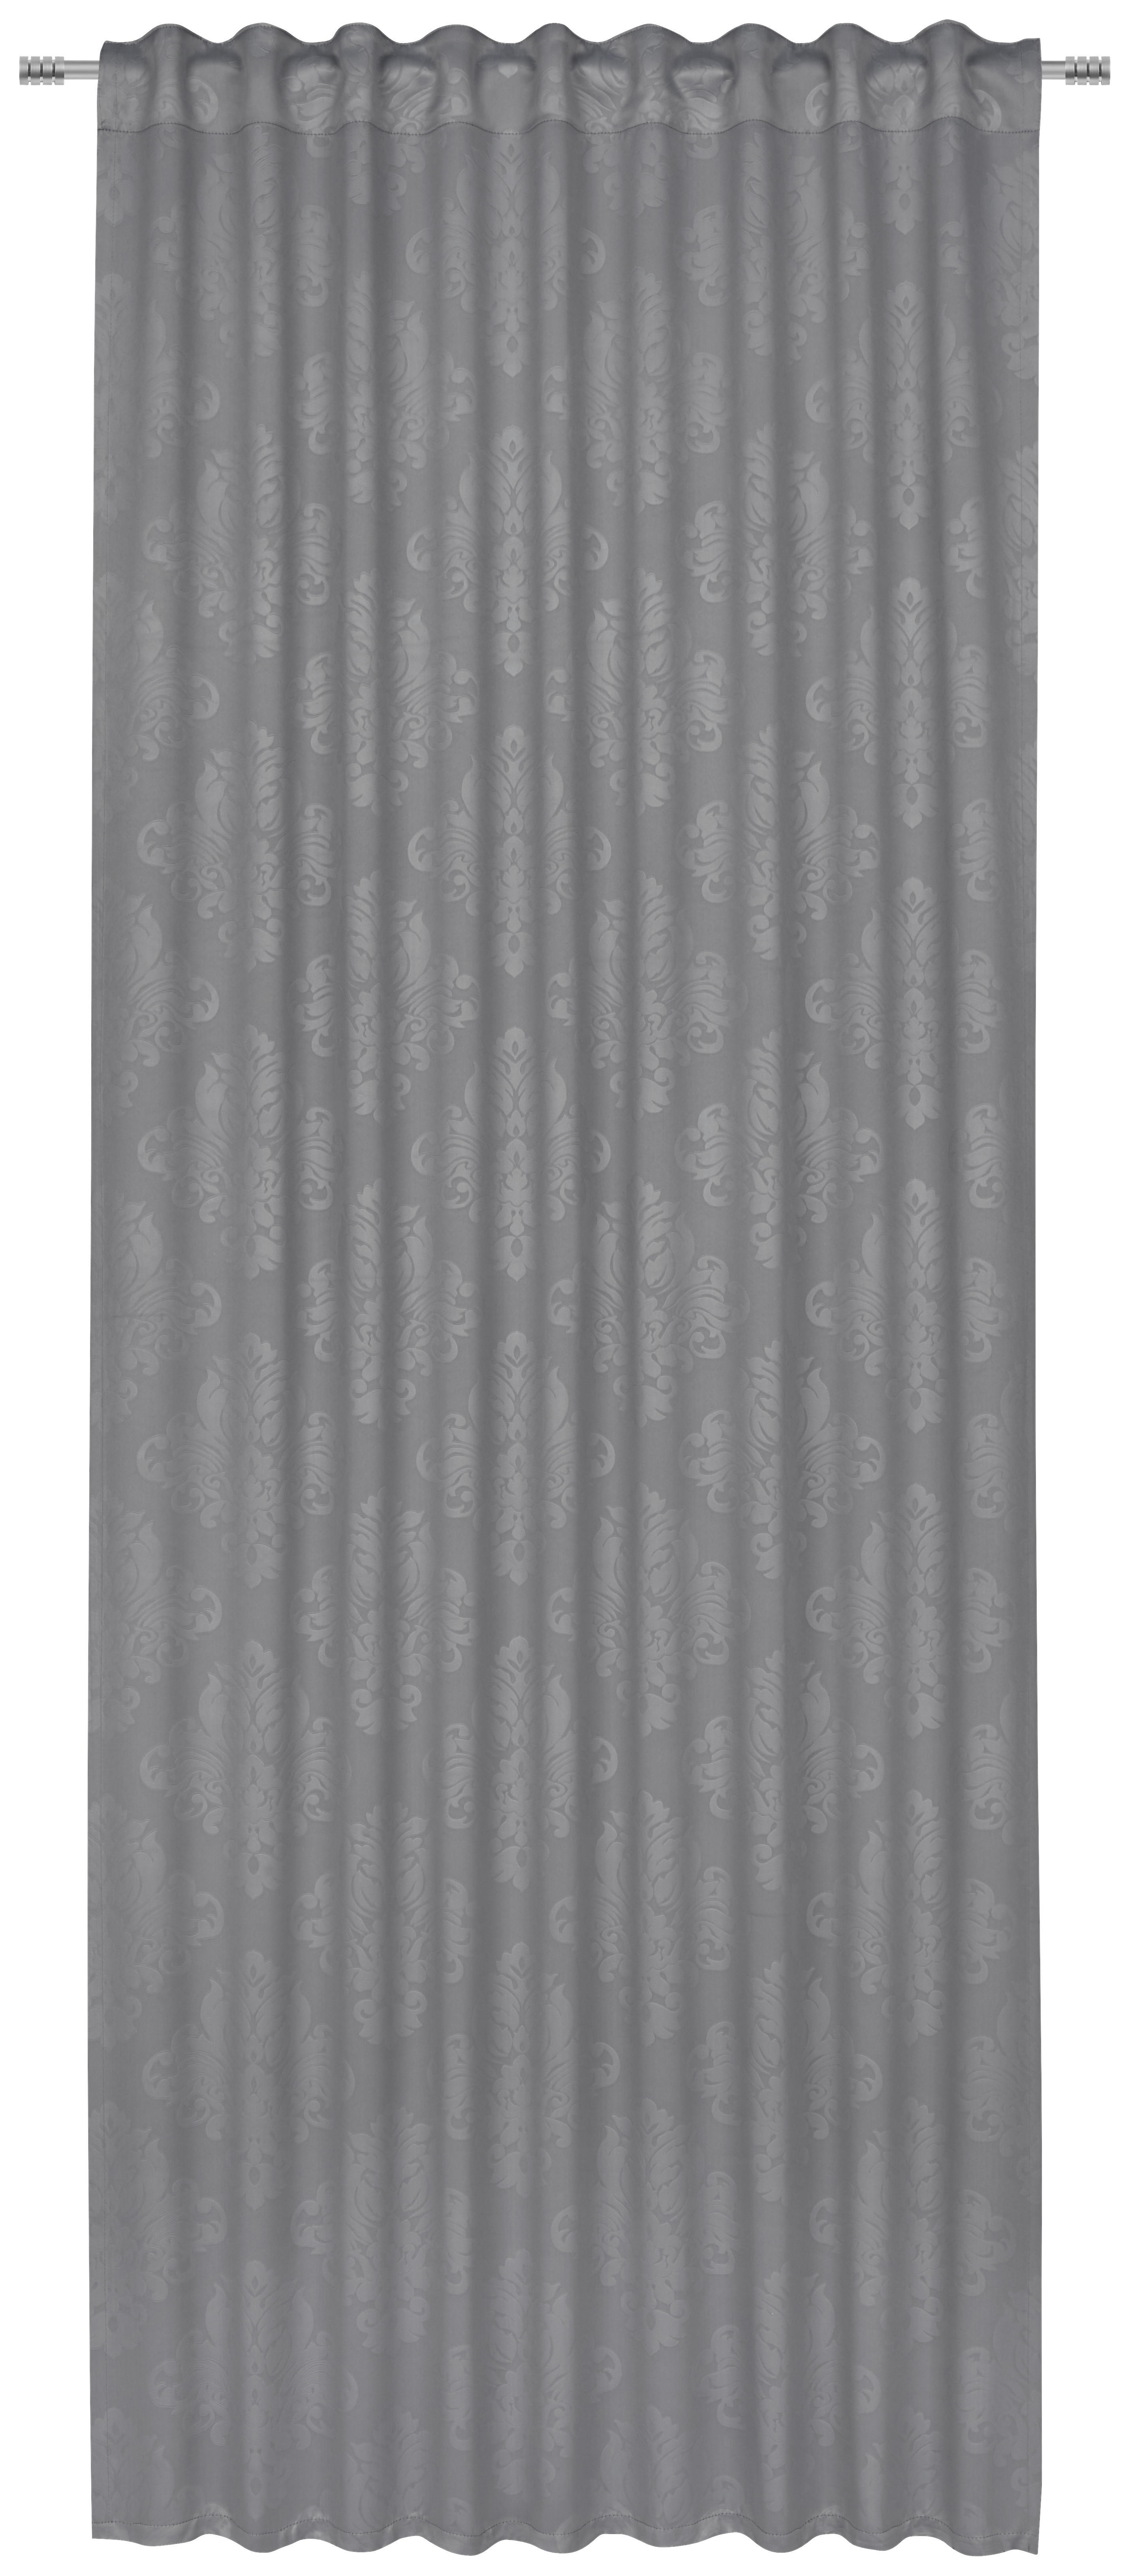 FERTIGVORHANG VIENNA black-out (lichtundurchlässig) 135/245 cm   - Grau, KONVENTIONELL, Textil (135/245cm) - Boxxx